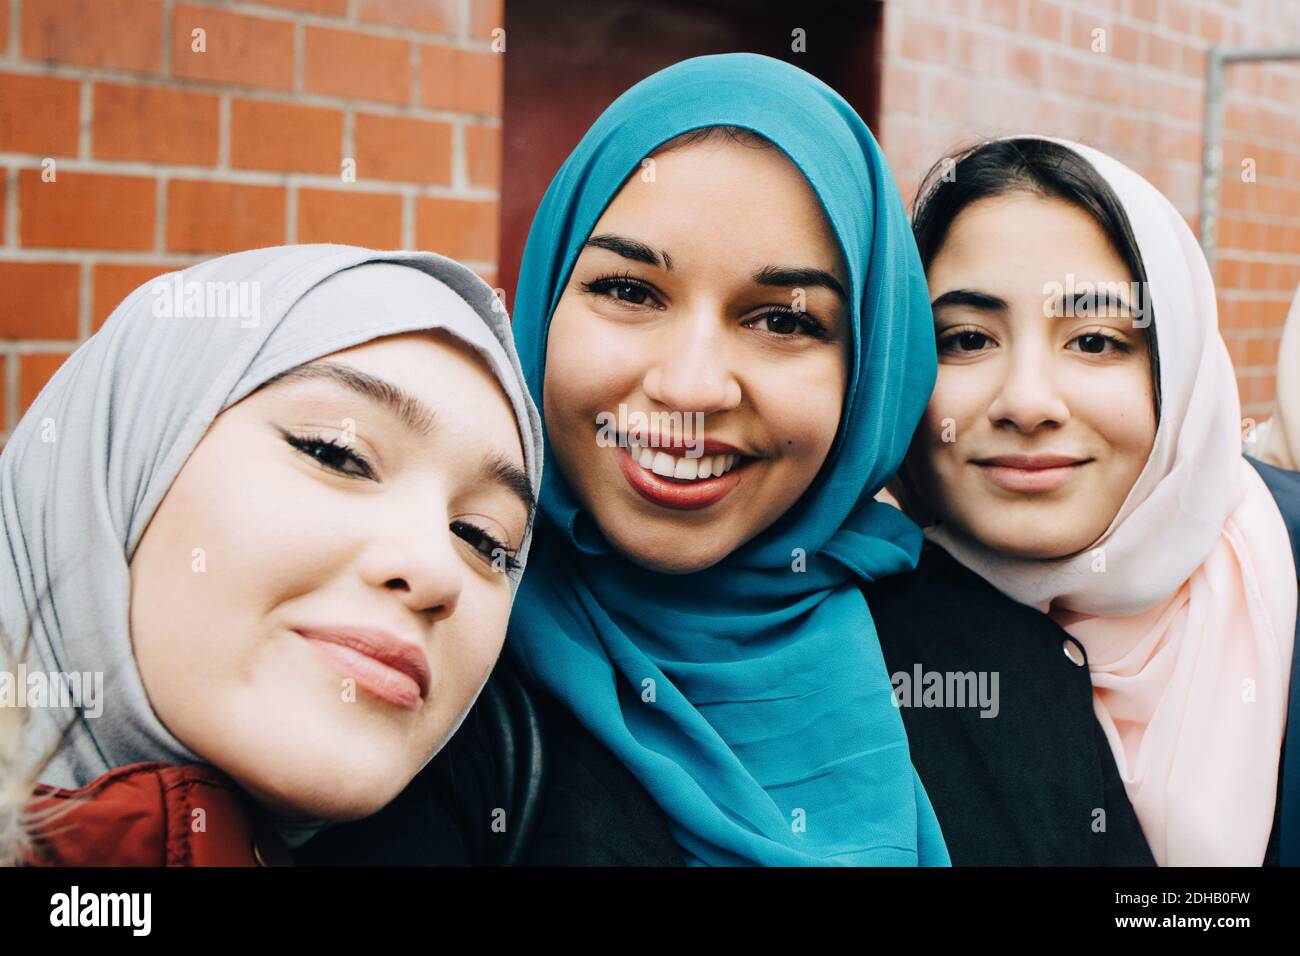 Portrait d'amis musulmans souriants contre la construction en ville Banque D'Images